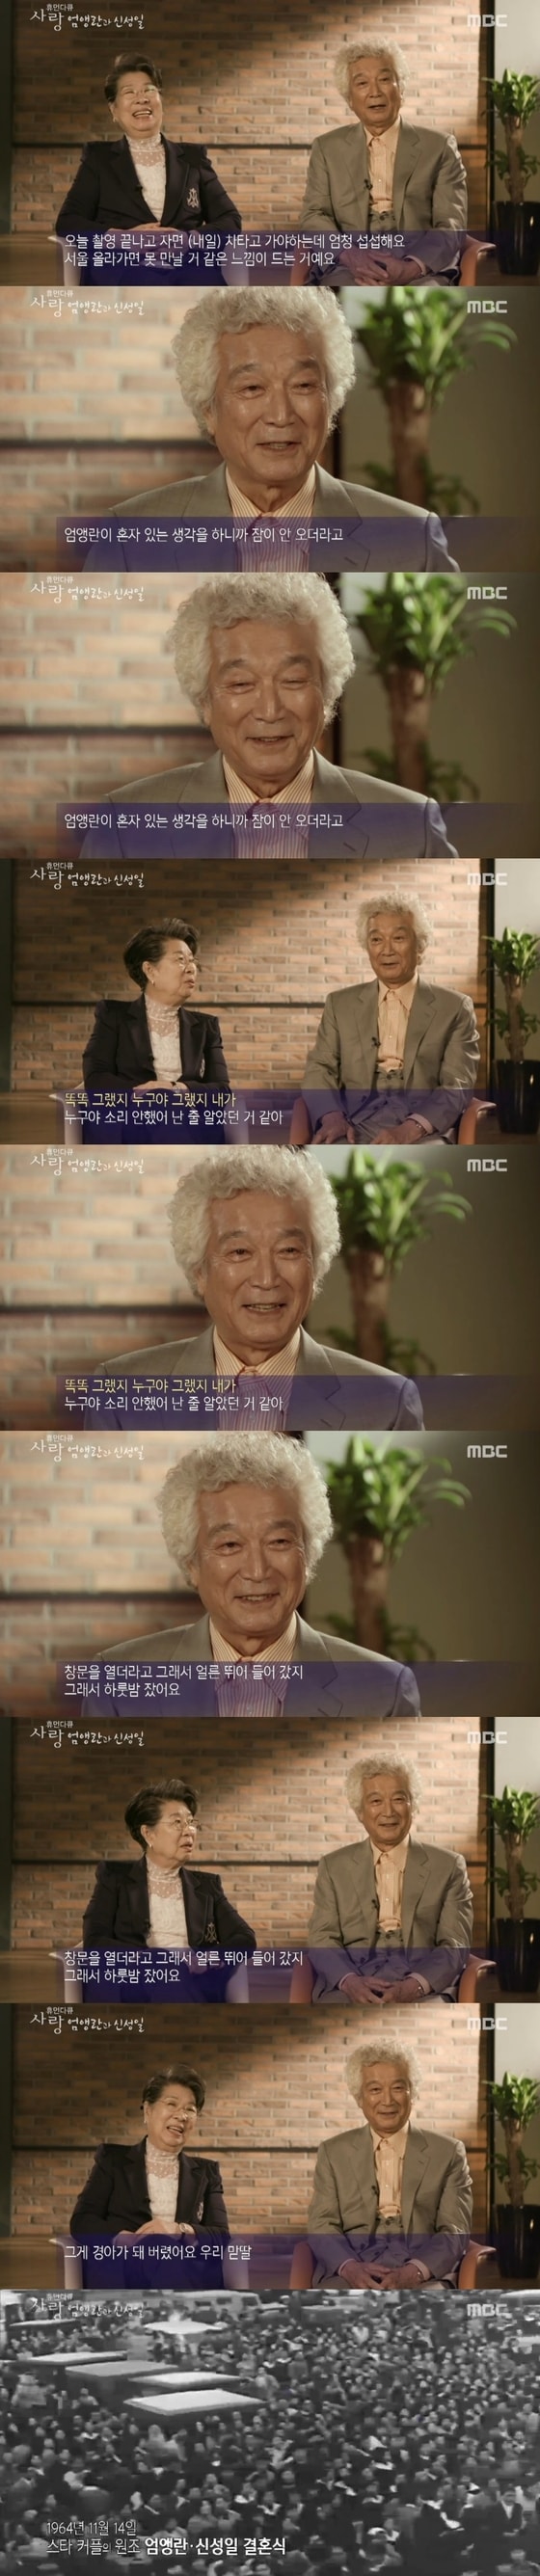 2일 밤 11시10분 MBC '휴먼다큐 사랑'이 방송됐다. ⓒ News1star / MBC '휴먼다큐 사랑' 캡처